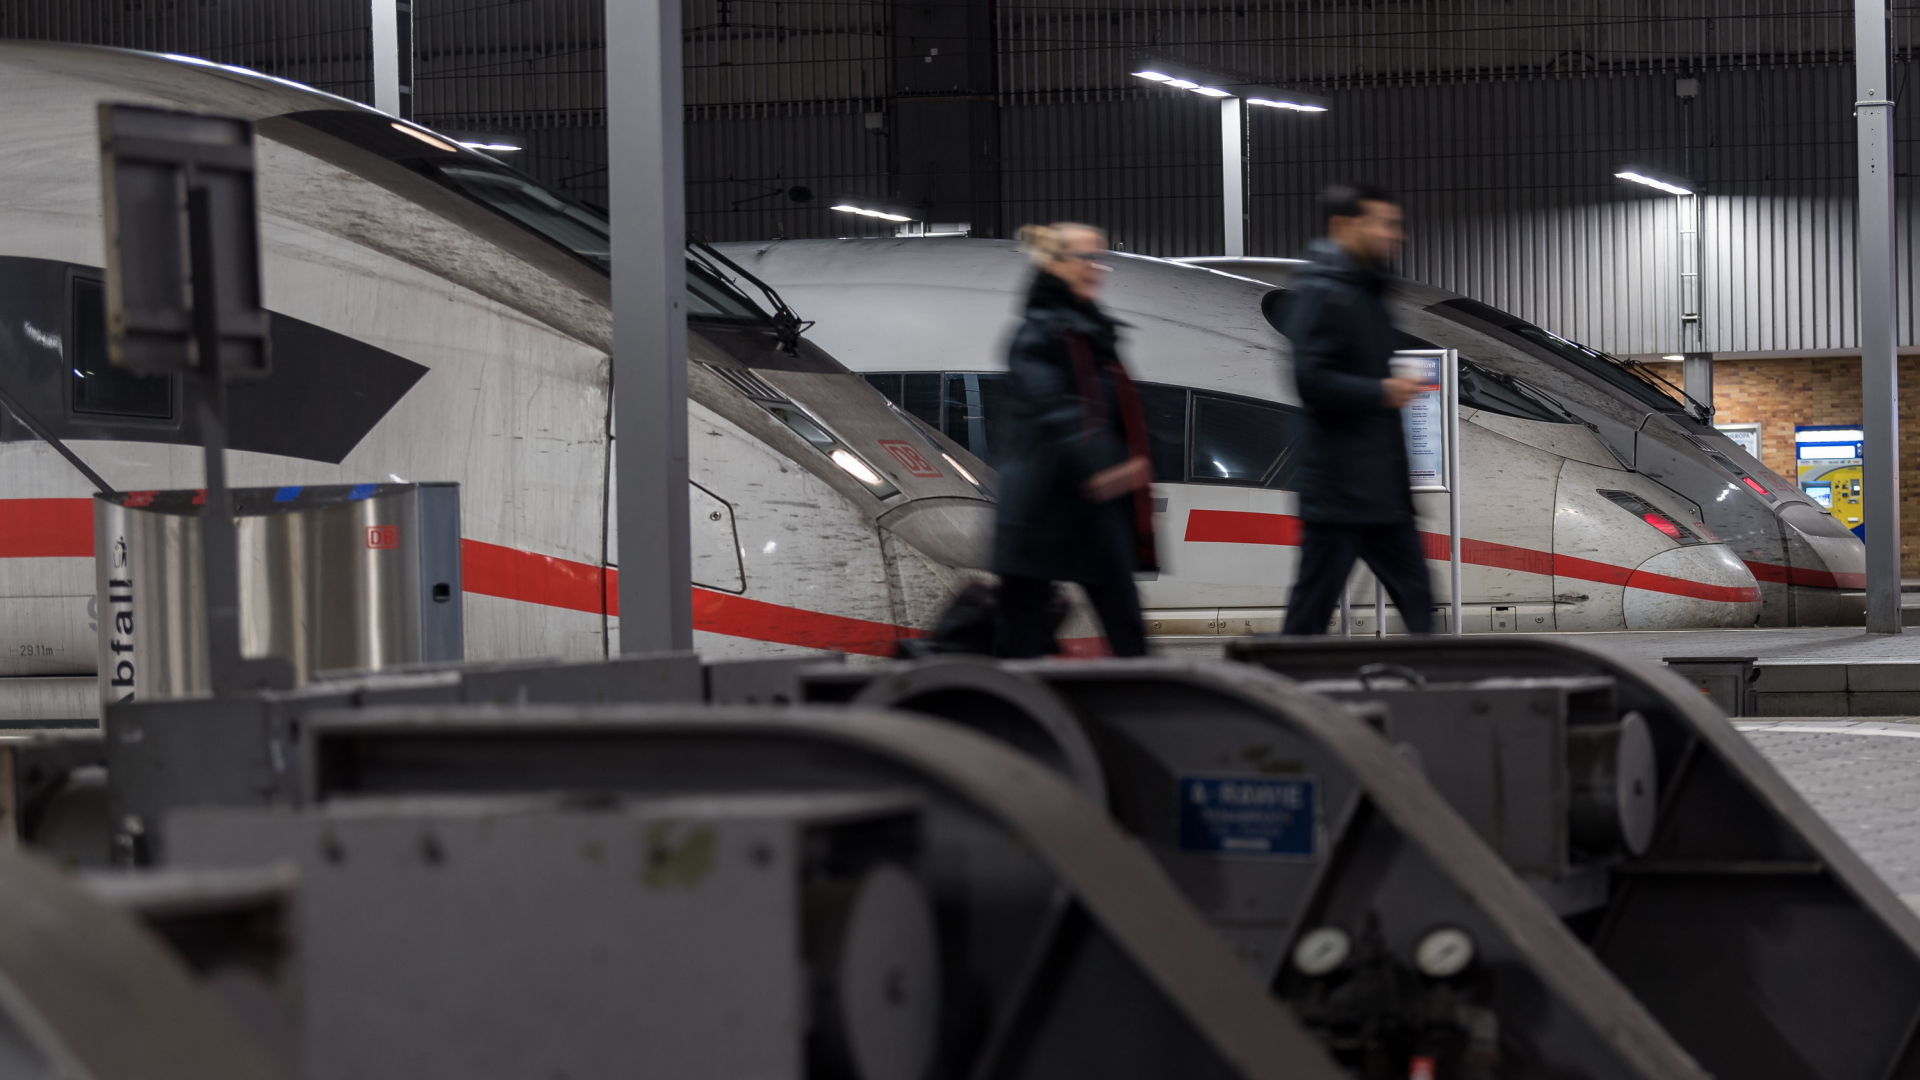 Züge stehen in München im Bahnhof | Bildquelle: dpa